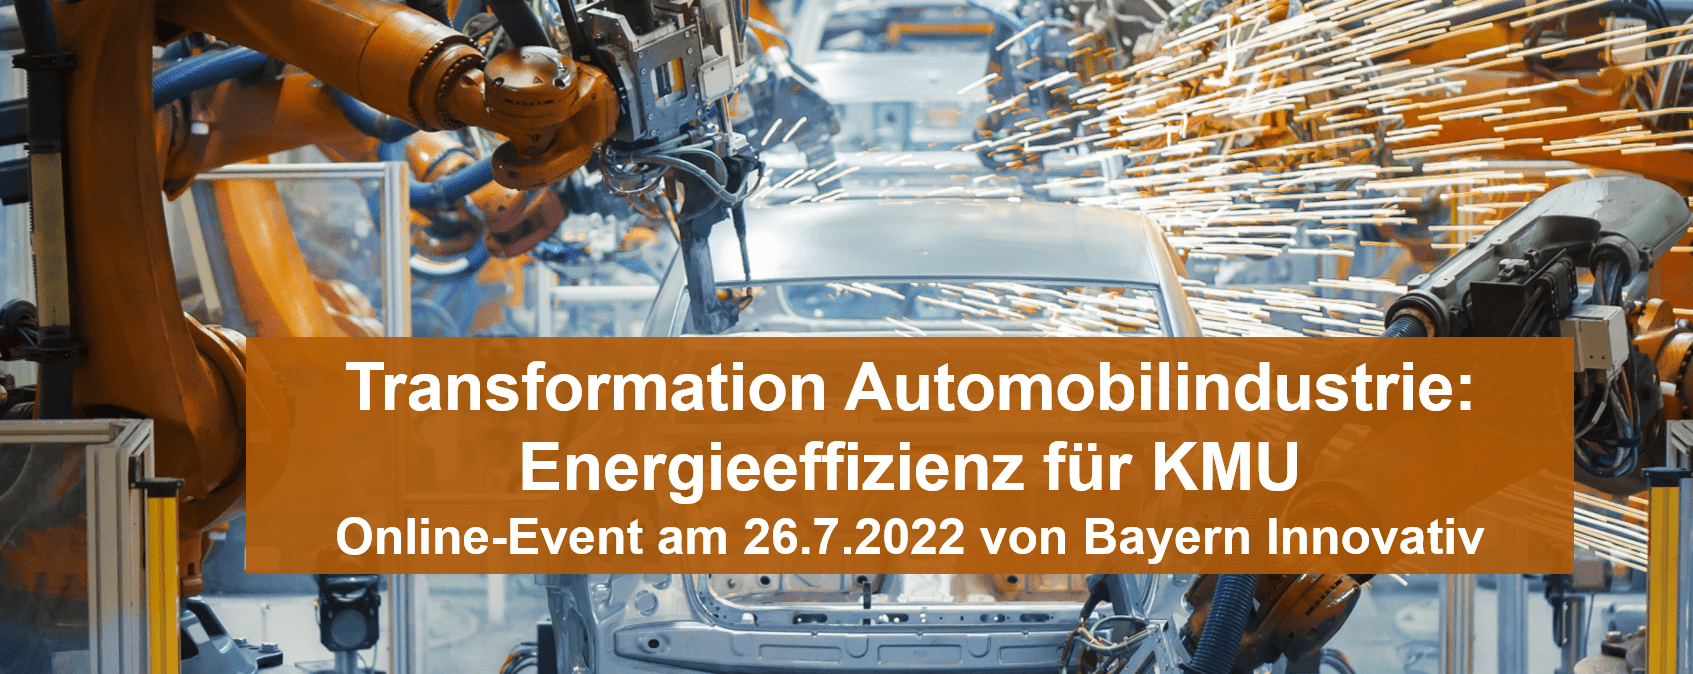 Energieeffizienz bei der Transformation Automobilindustrie – online-Event am 26.7.2022